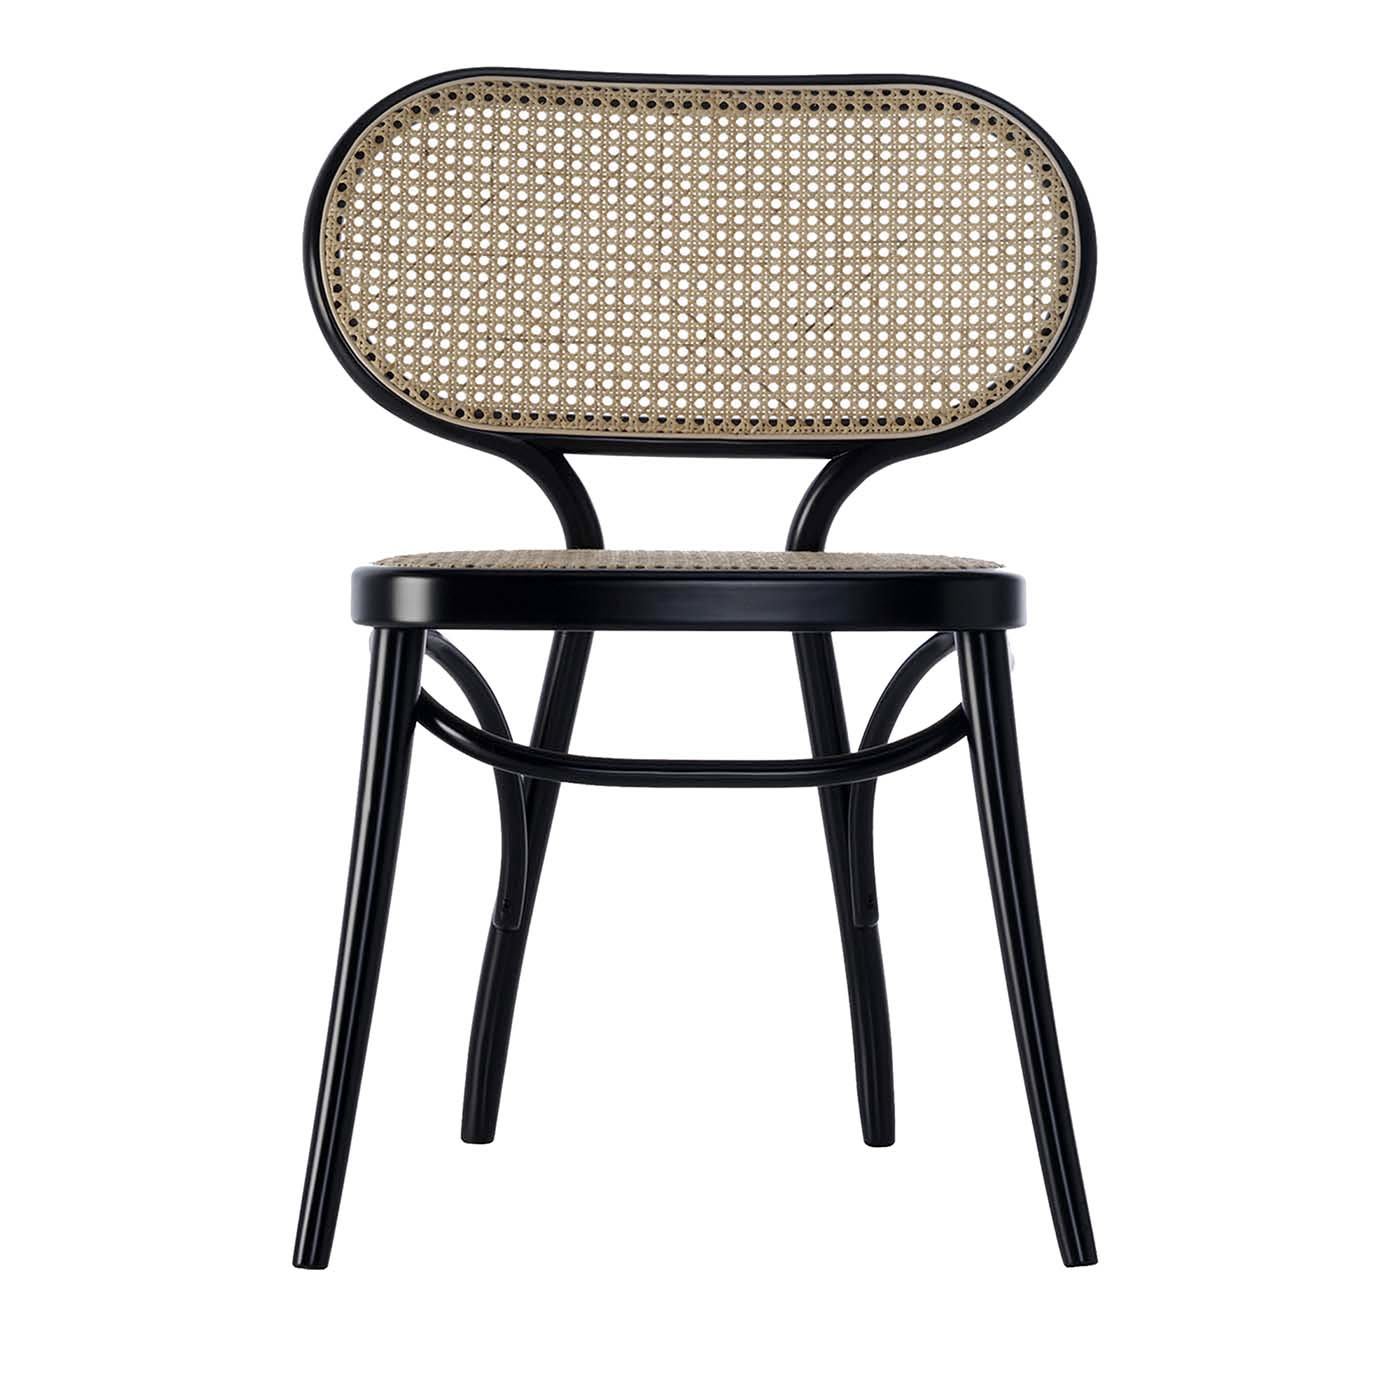 Bodystuhl Chair by Nigel Coates - Gebrüder Thonet Vienna GmbH (GTV) – Wiener GTV Design